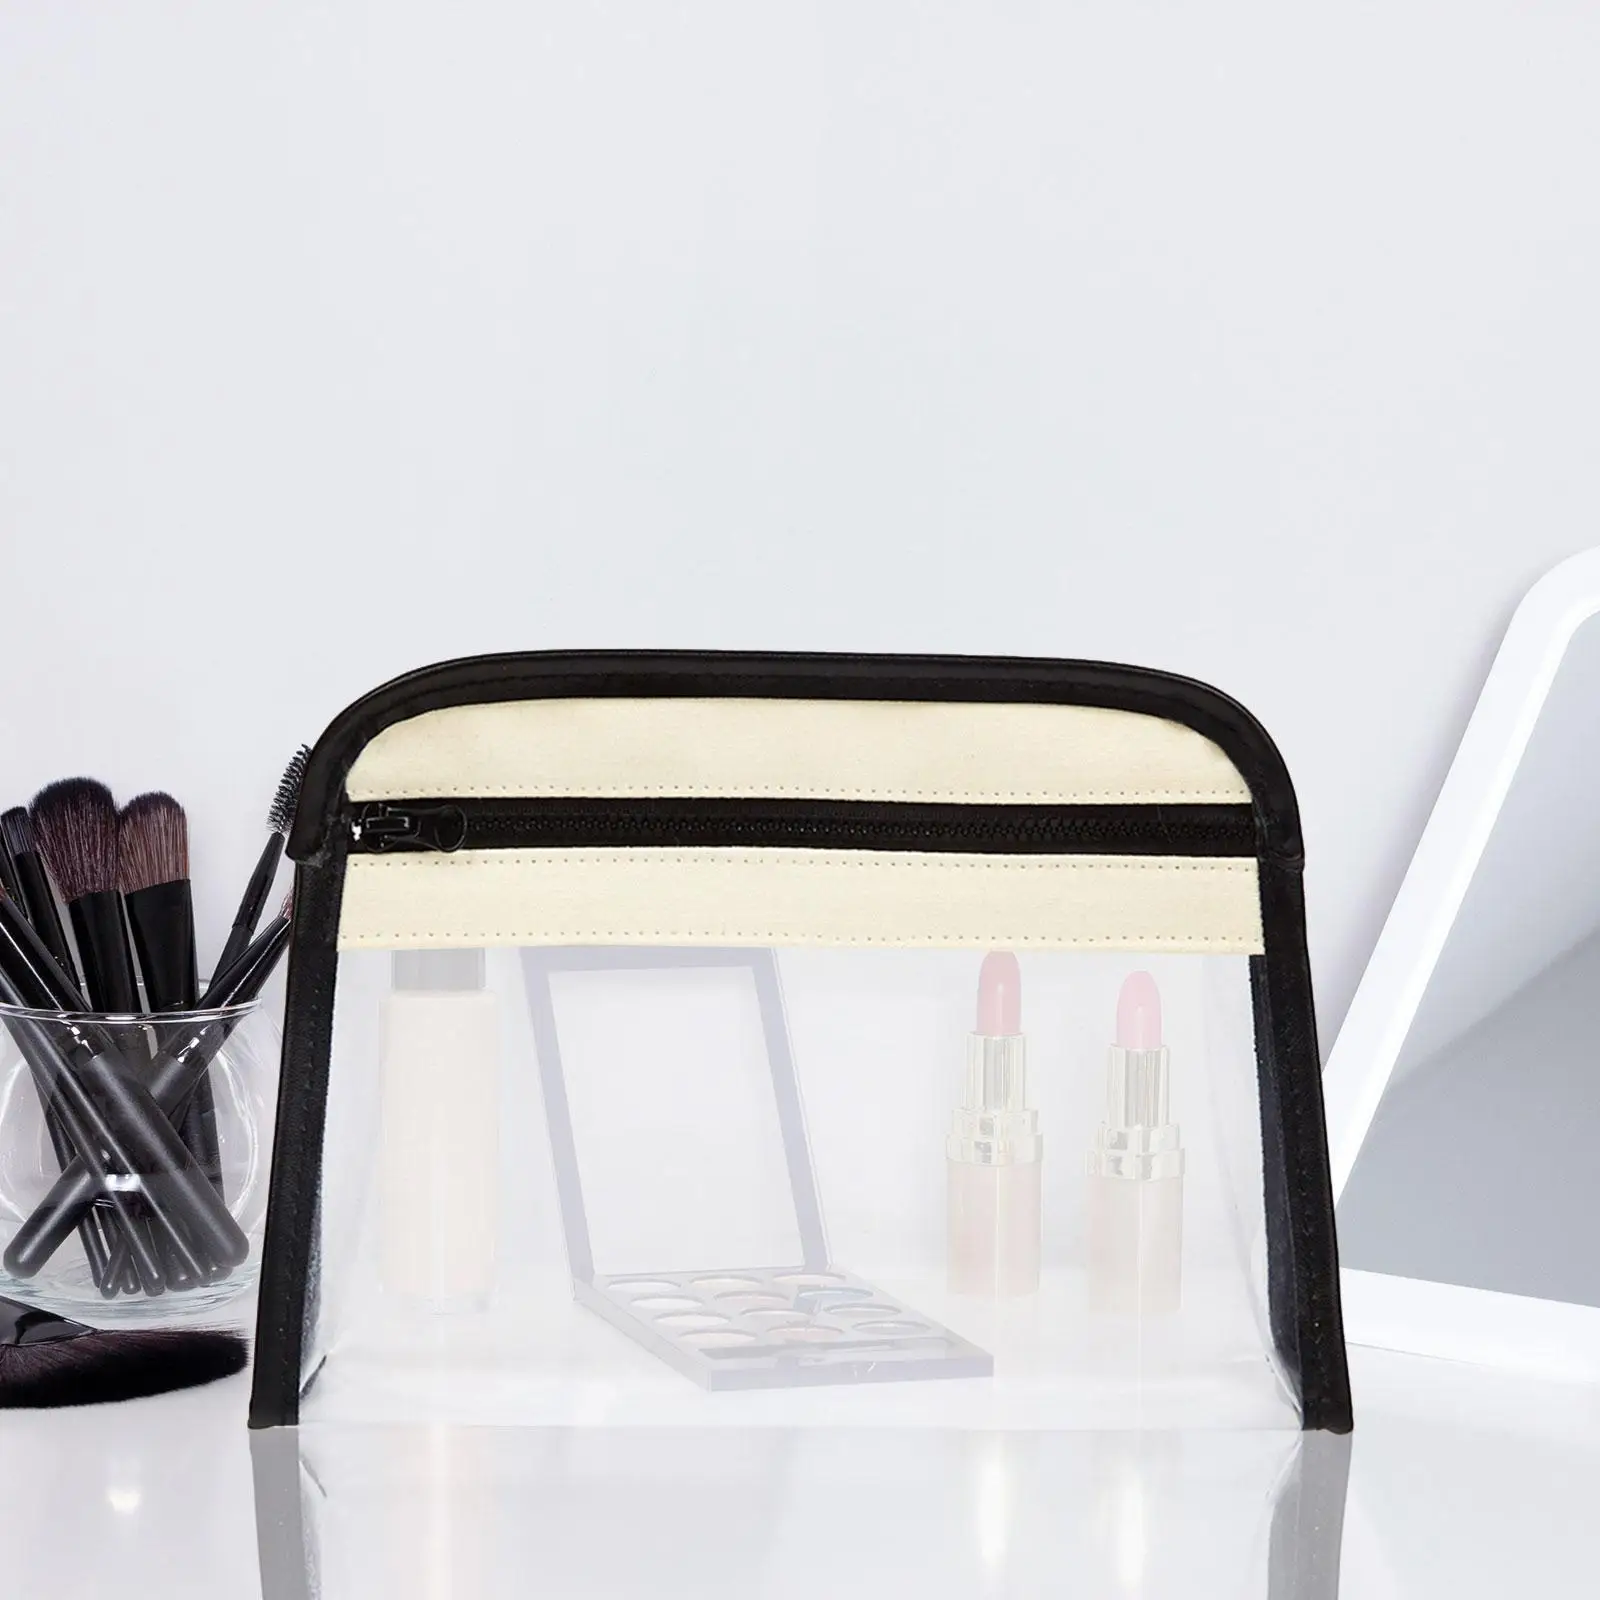 Waterproof Makeup Bag Transparent Cosmetic Bag Clear Toiletry Bag Travel Makeup Organizer